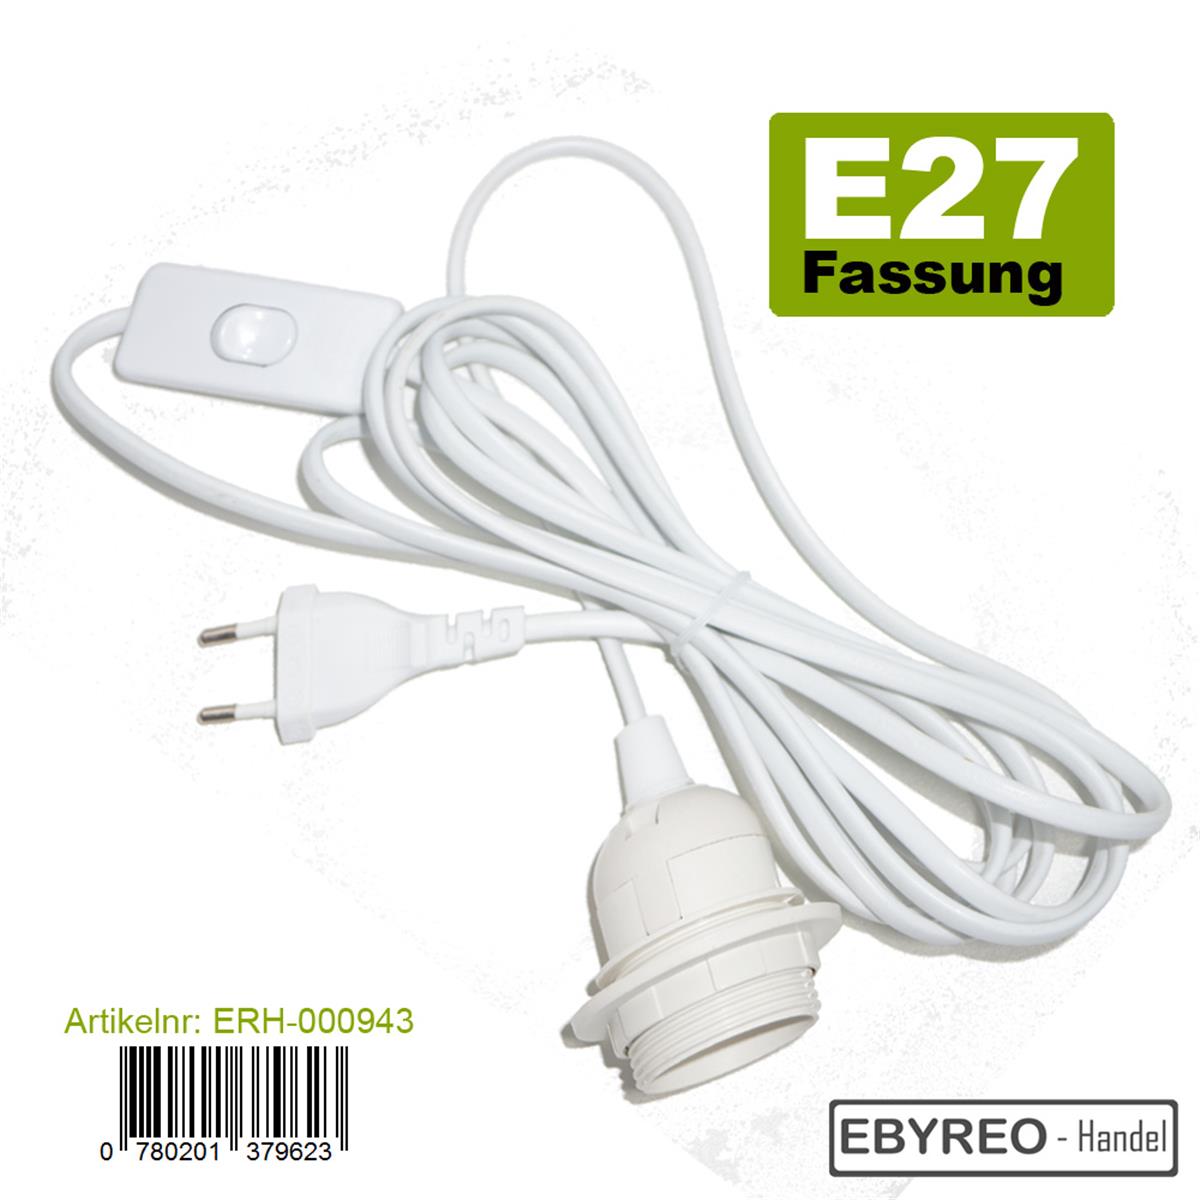 EbyReo® - Netzkabel mit Schalter und Fassung E27